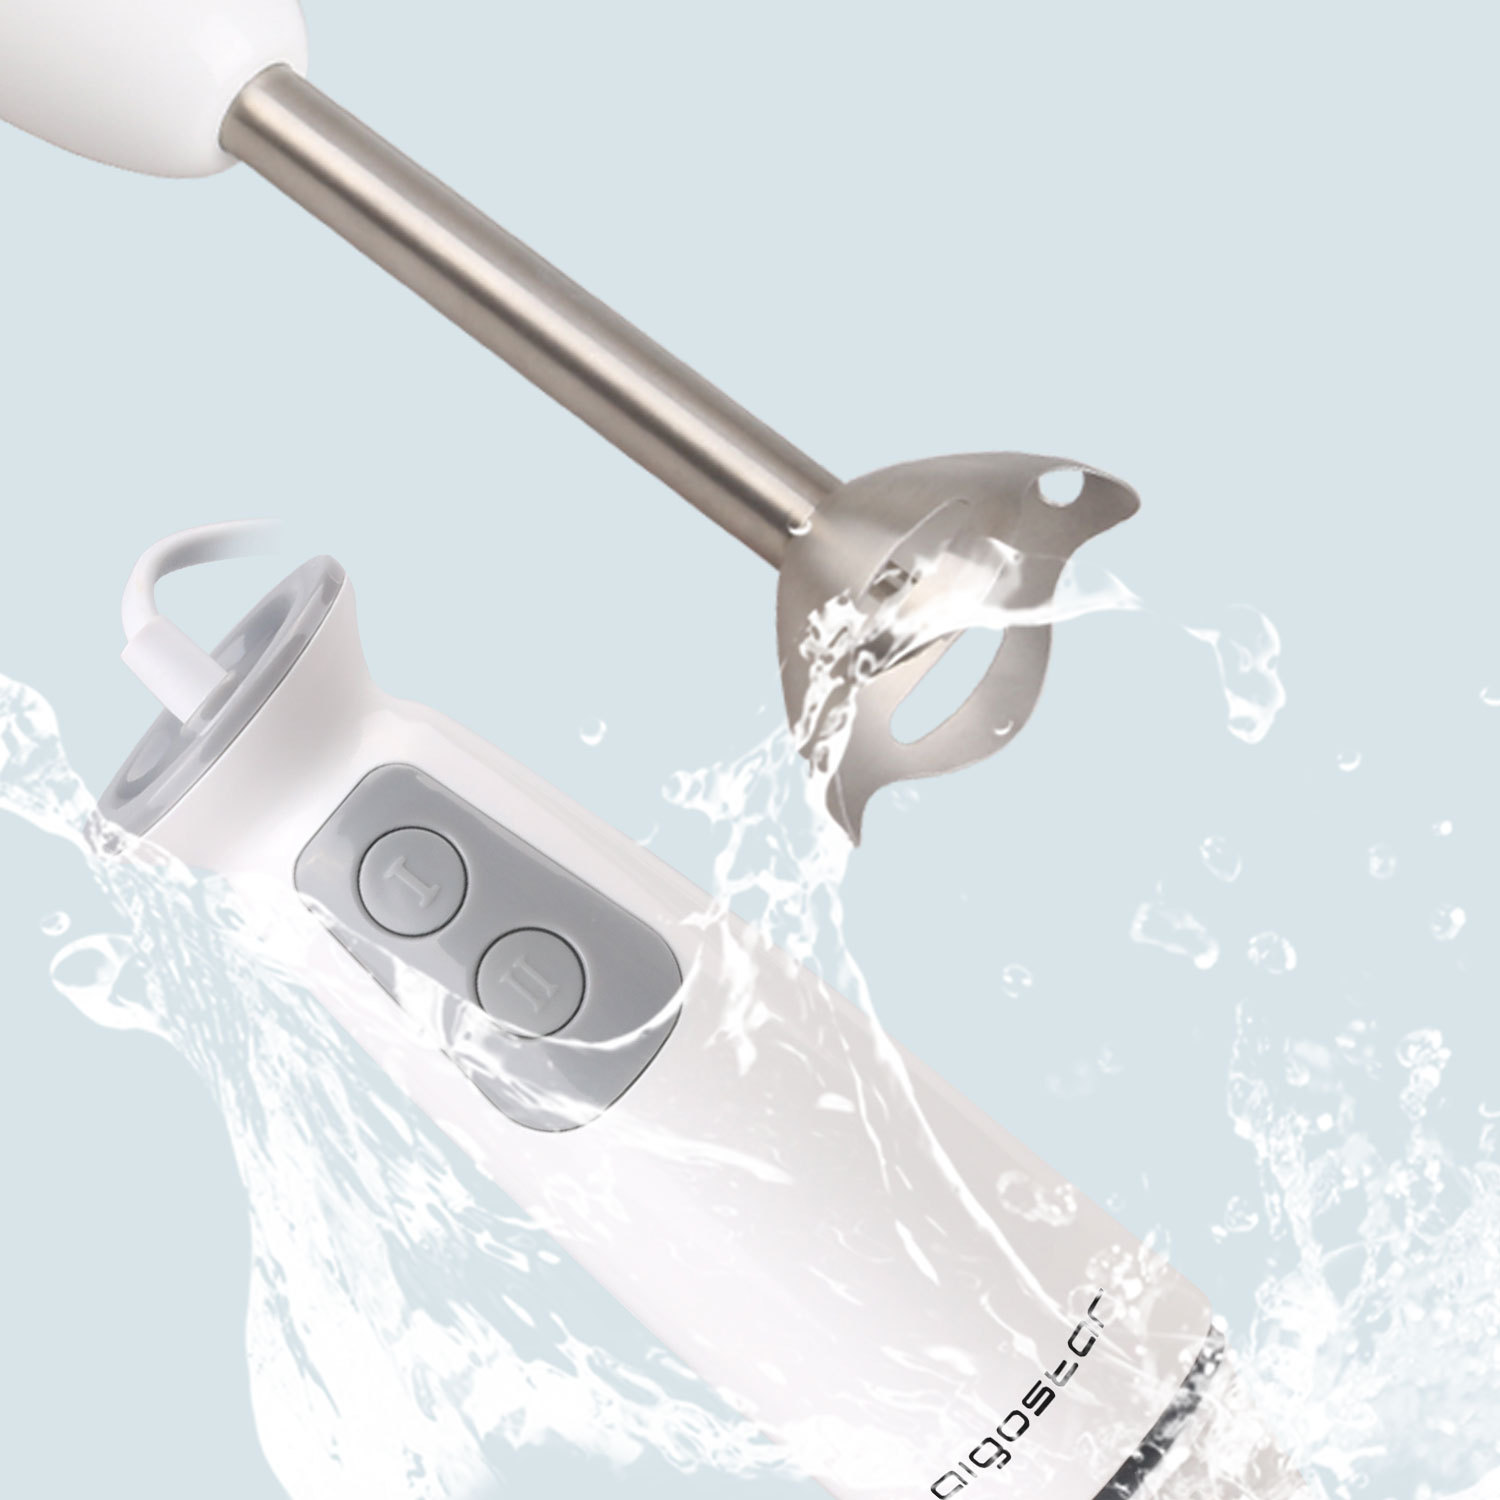 Aigostar Stirring White 30ISF - Stabmixer mit 700ml Becher, 2-fach, hochwertiger Kunststoff und 304 Food Grade Edelstahl, 400W, BPA frei, weiß, . EINWEGVERPACKUNG.(12)